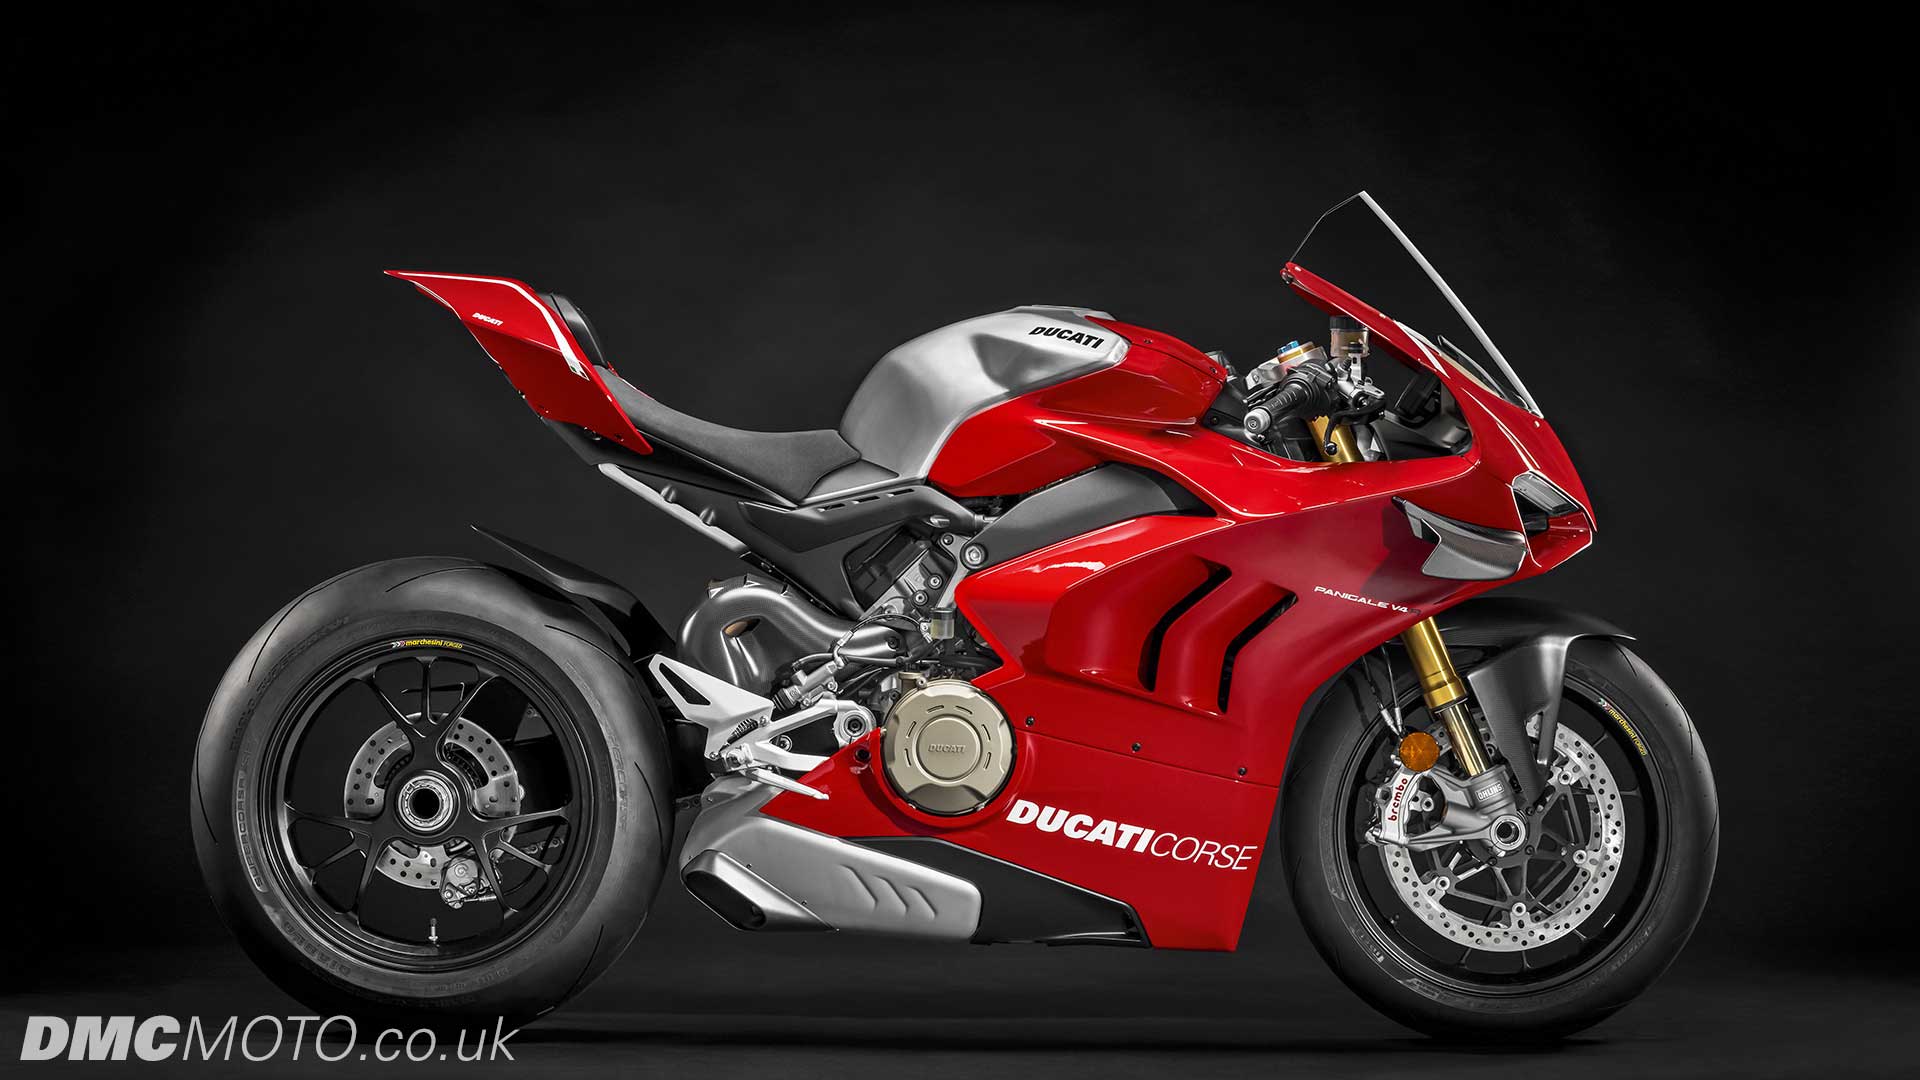 2019 Ducati Panigale V4 R for sale at Ducati Preston, Lancashire, Scotland